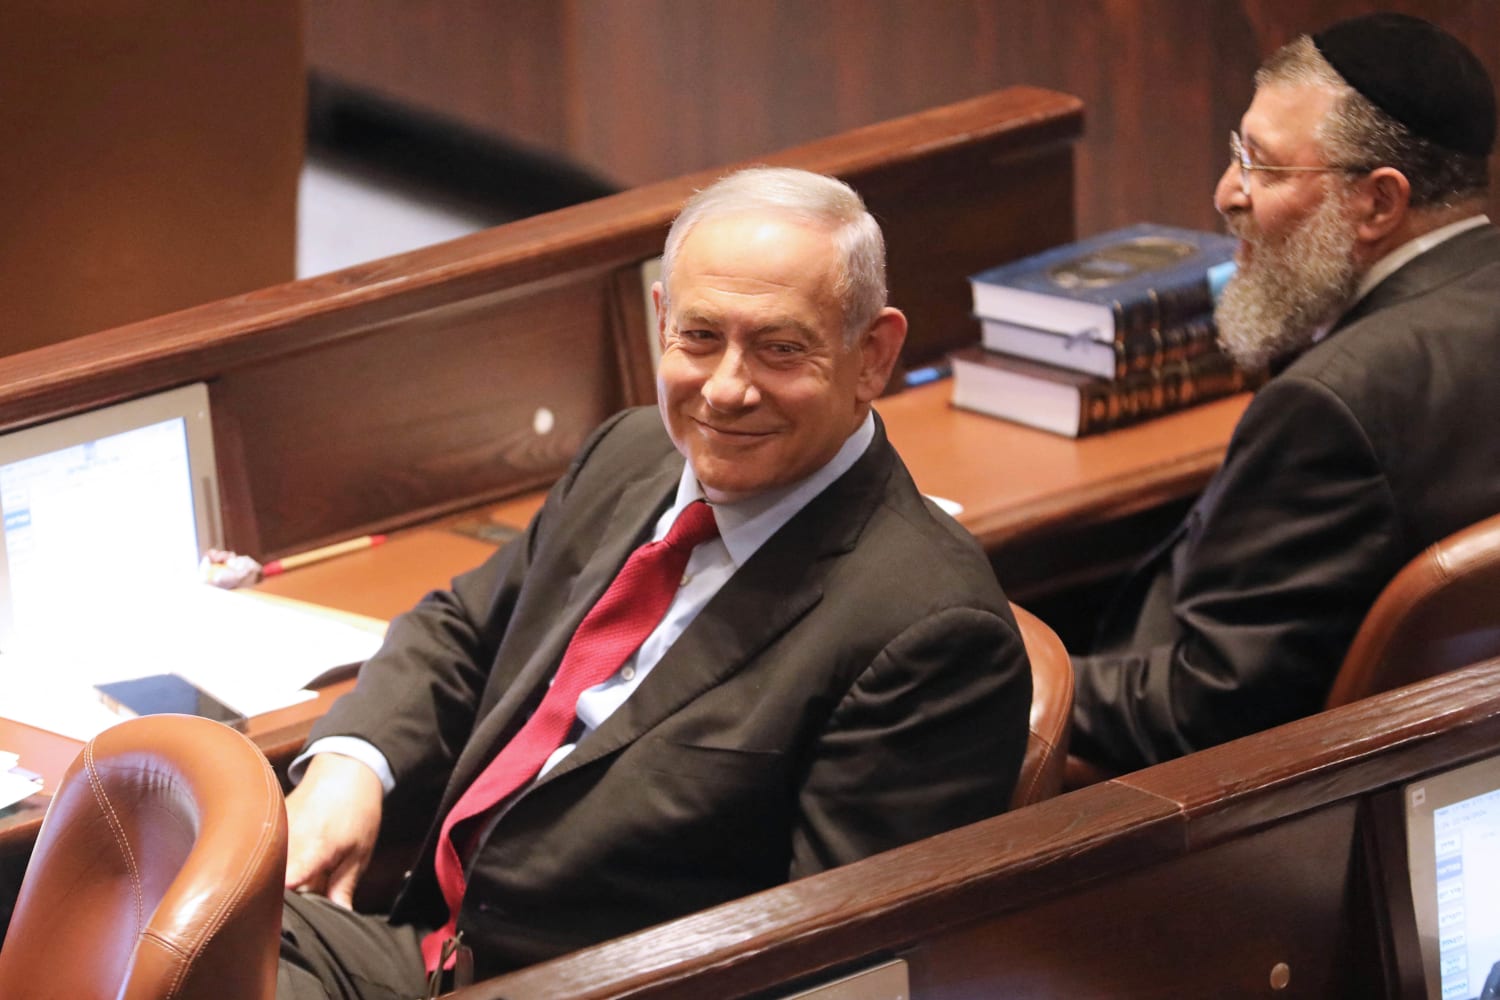 Benjamin Netanyahu Has Put His Foot In It